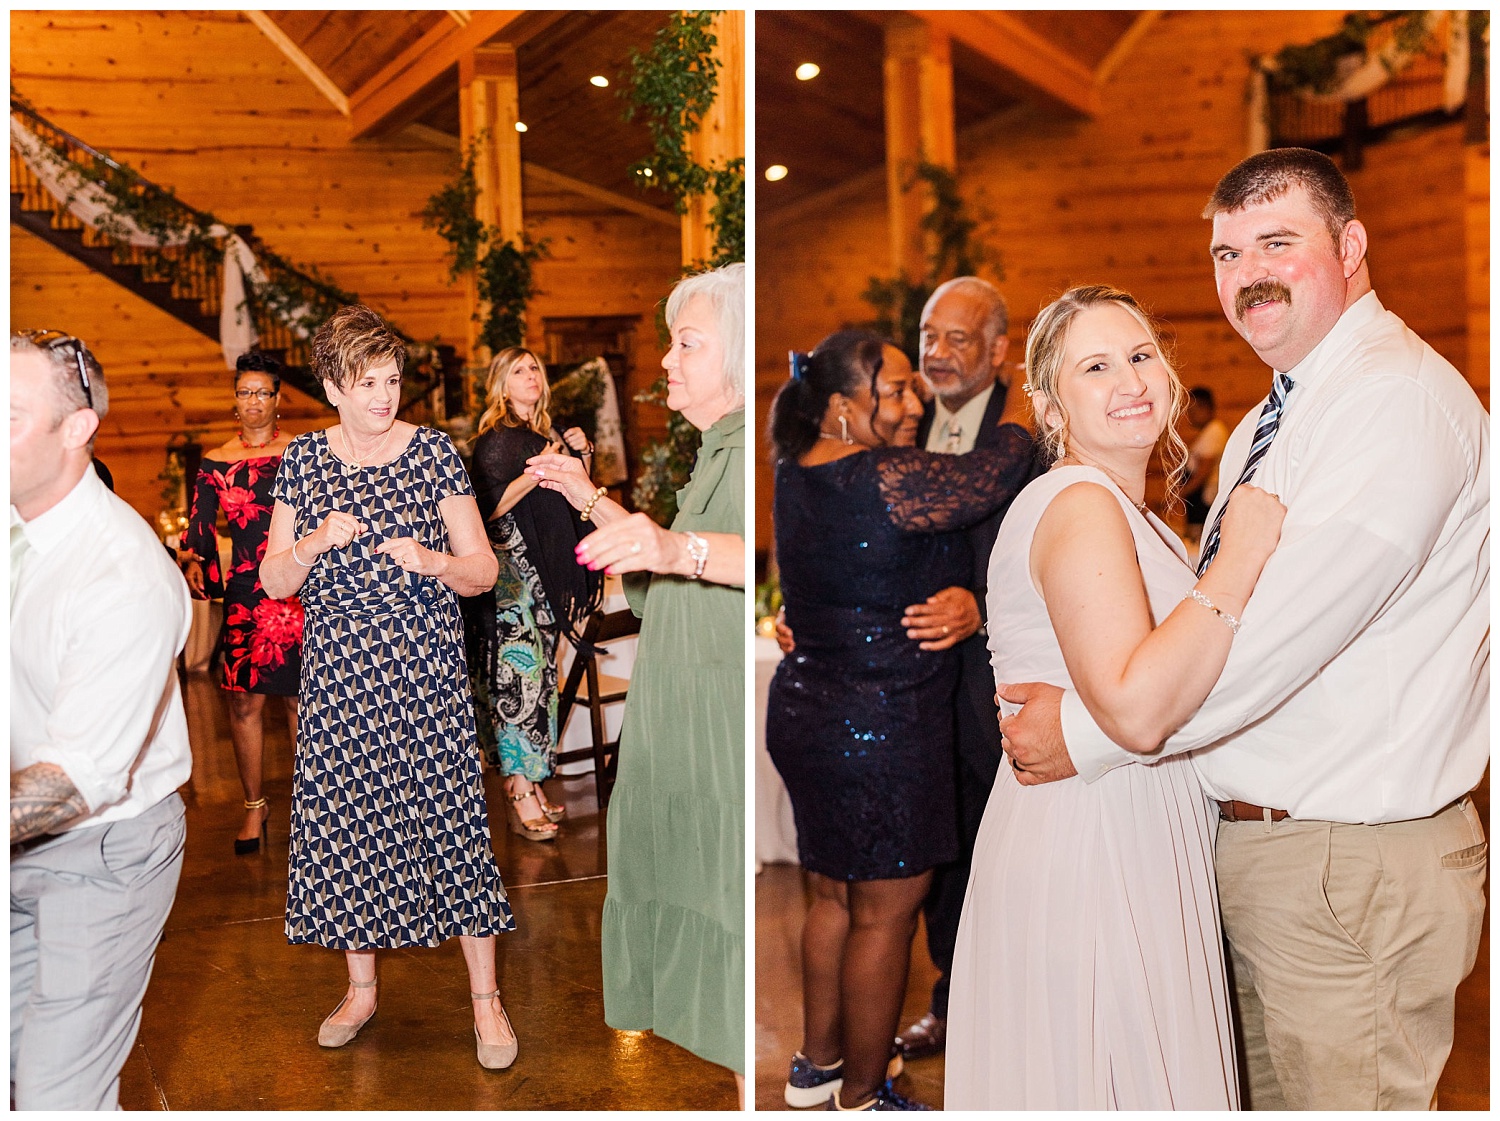 wedding guests dancing at reception at The Carolina Barn